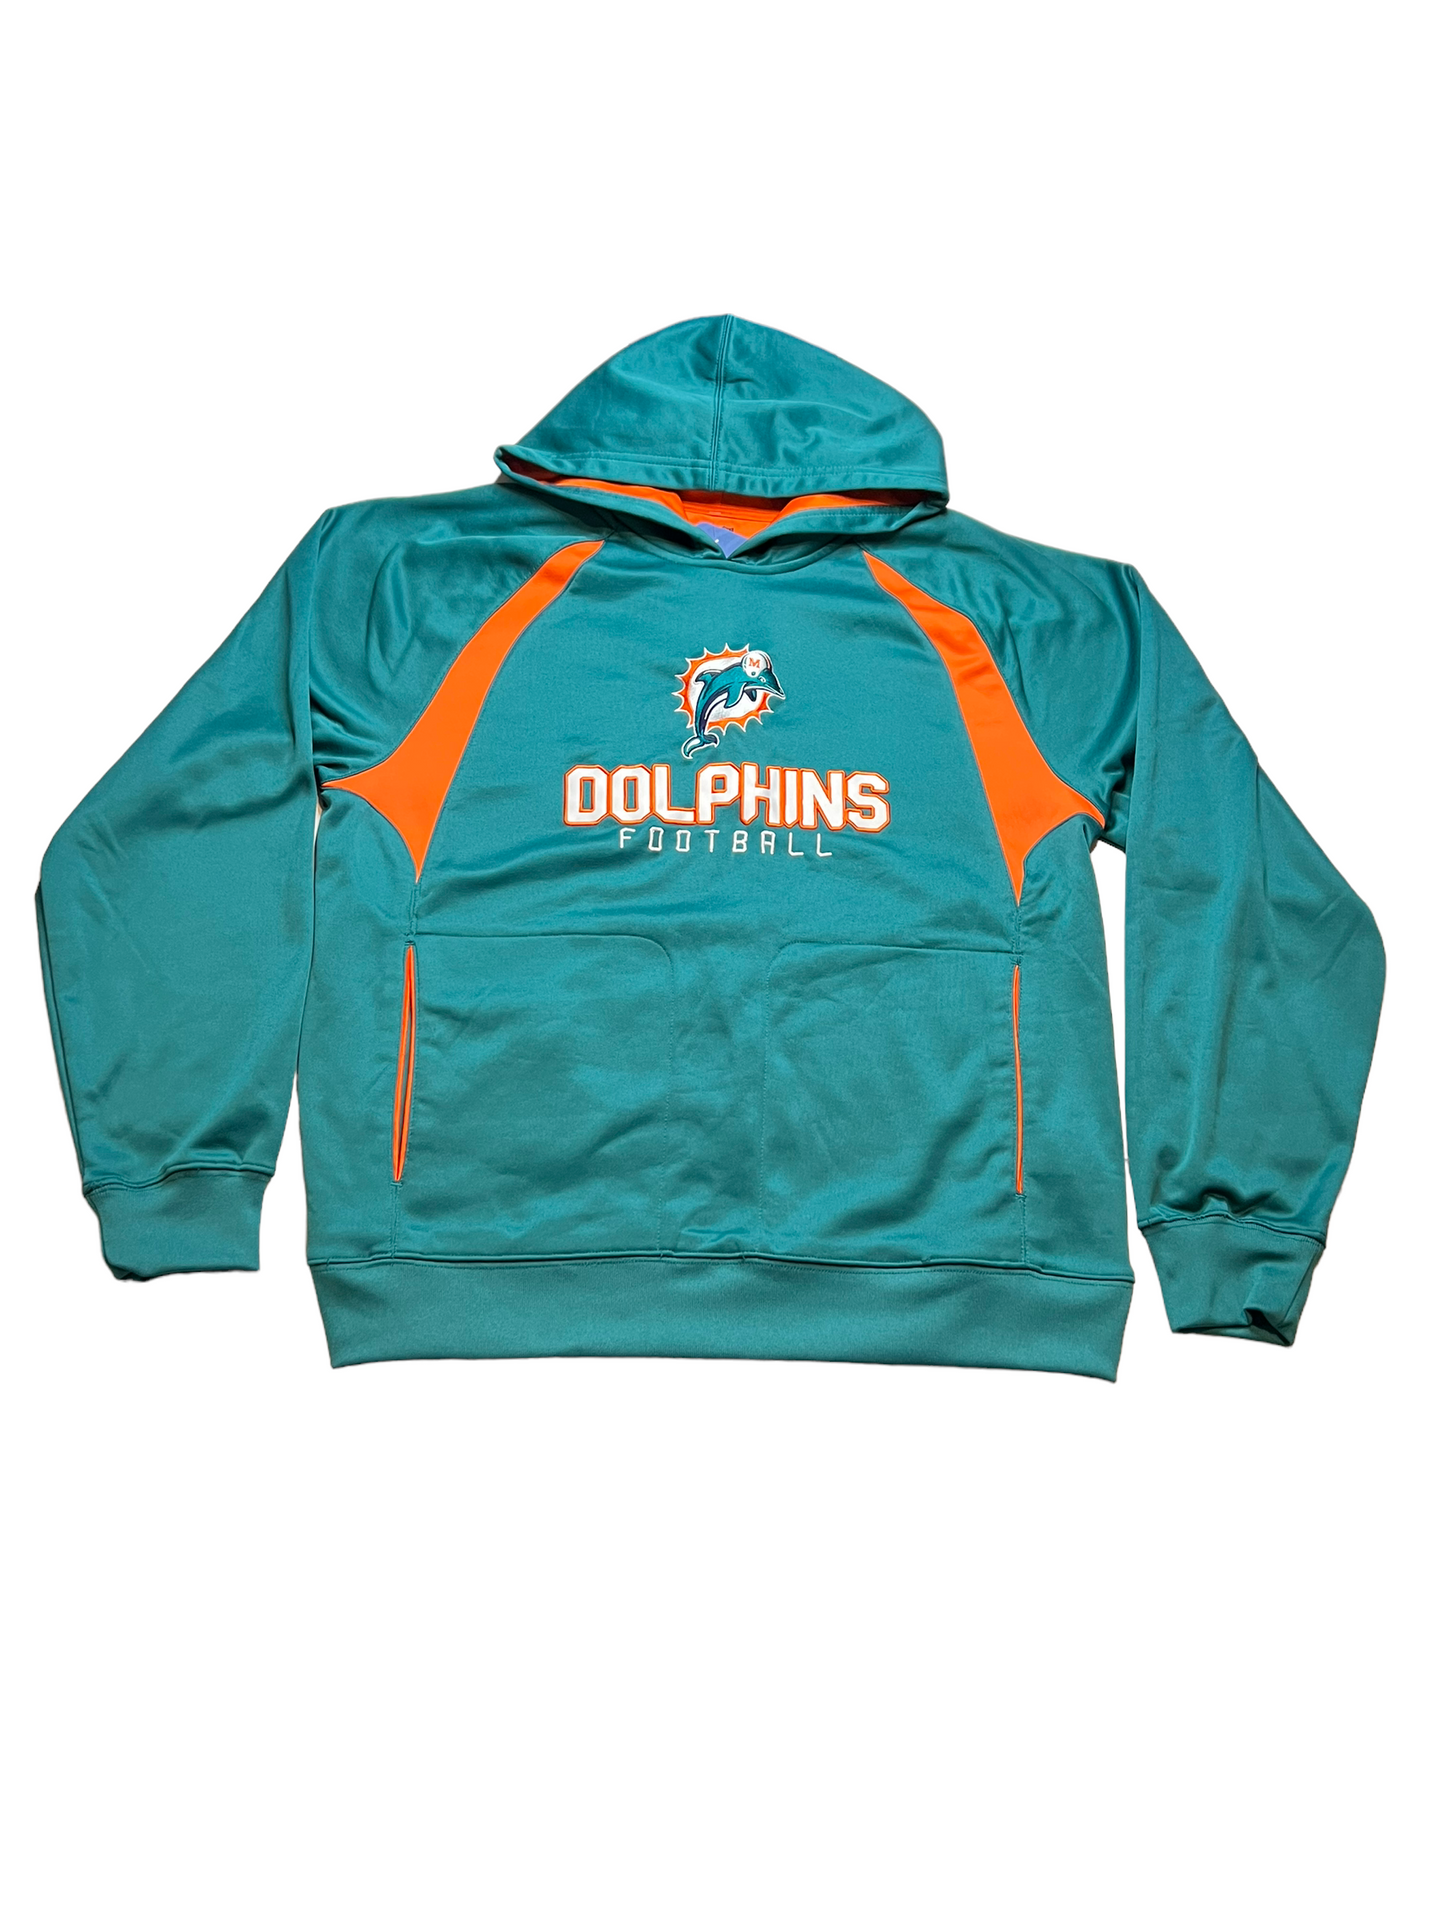 Miami Dolphins Sweater Medium